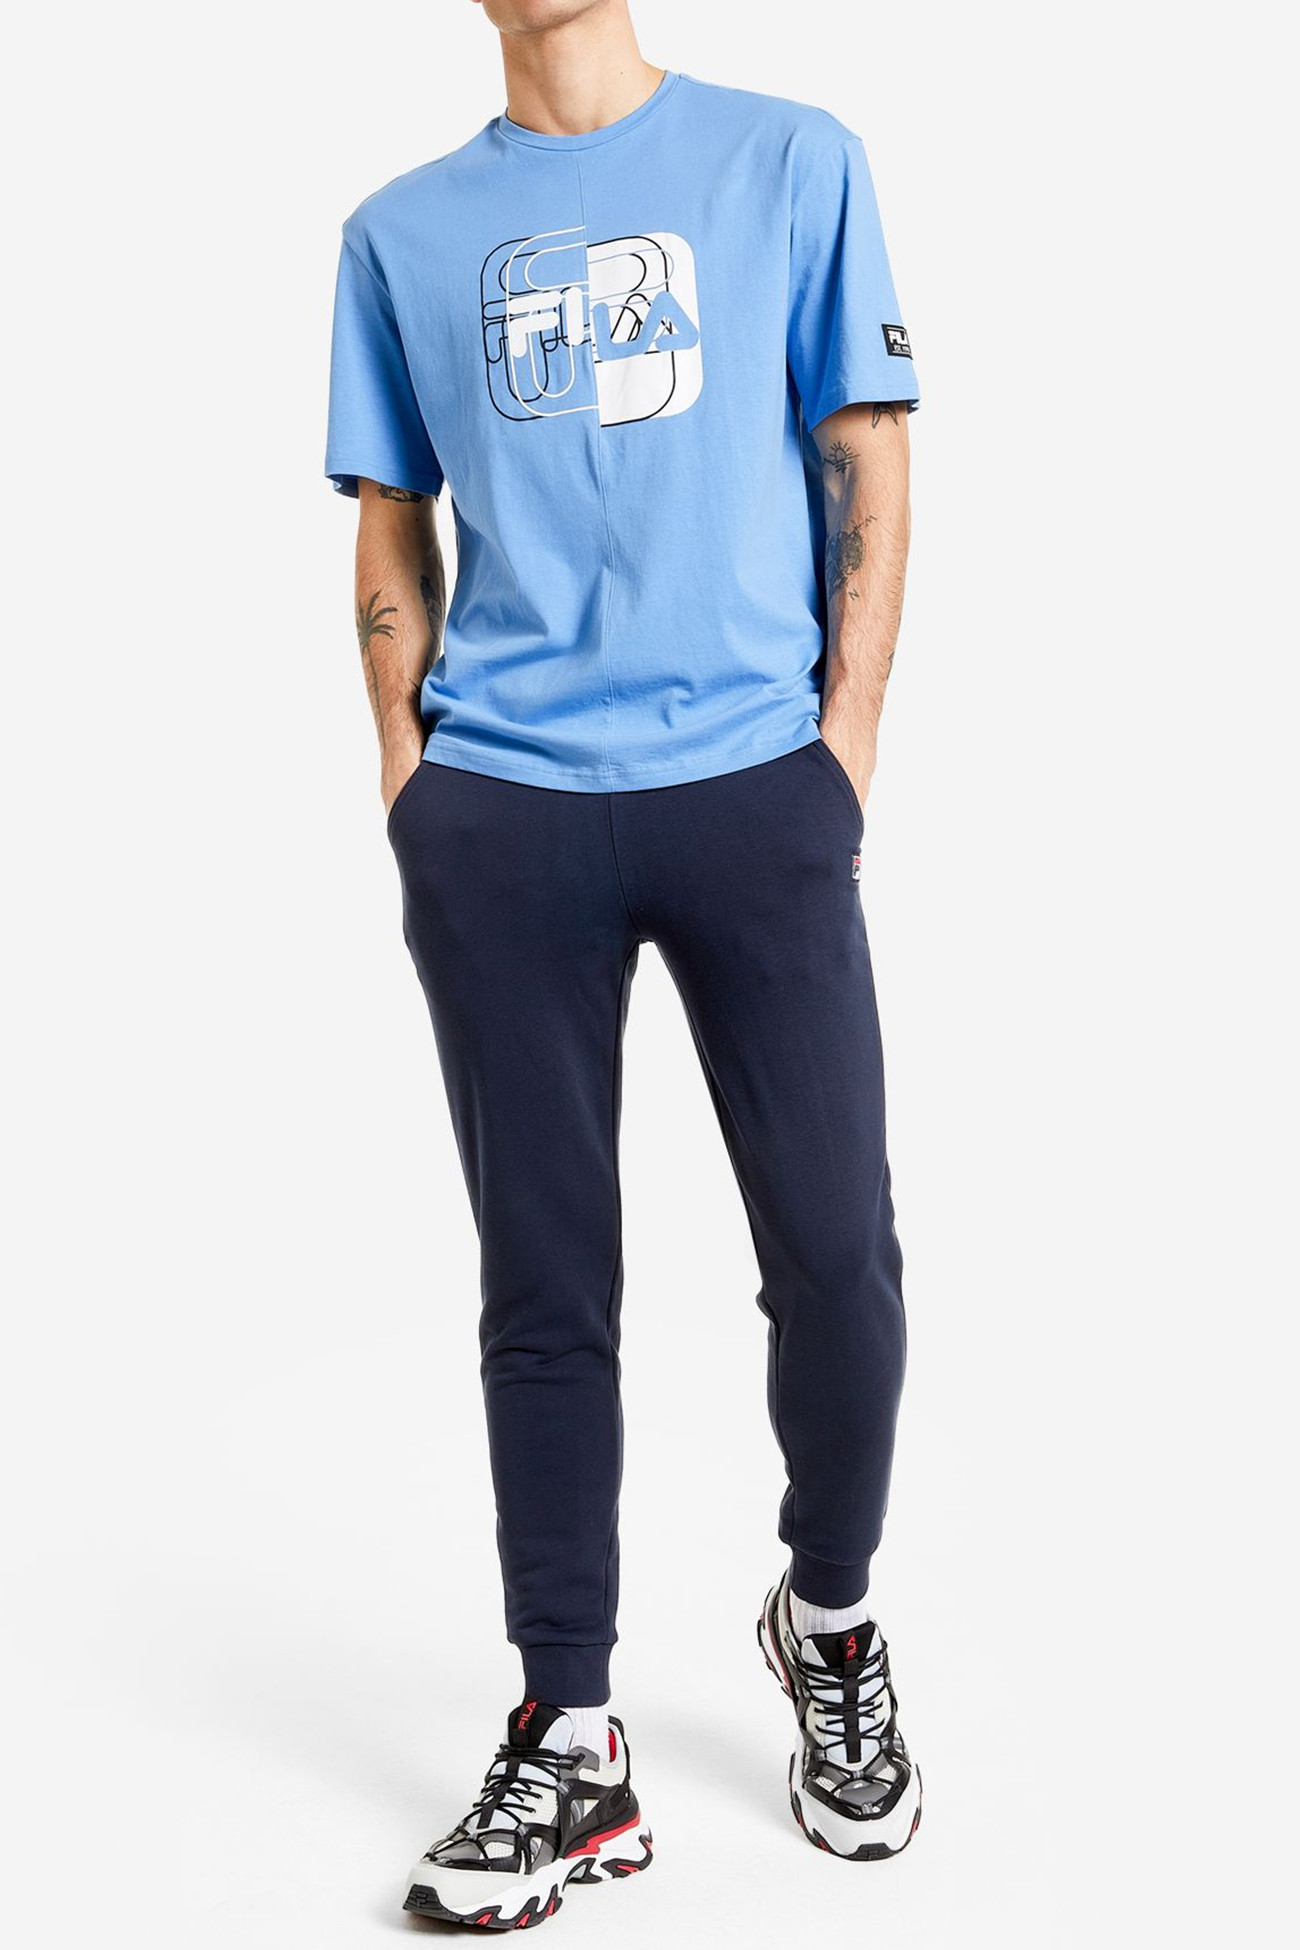 Футболка мужская FILA T-shirt голубая 113358-S1 изображение 2